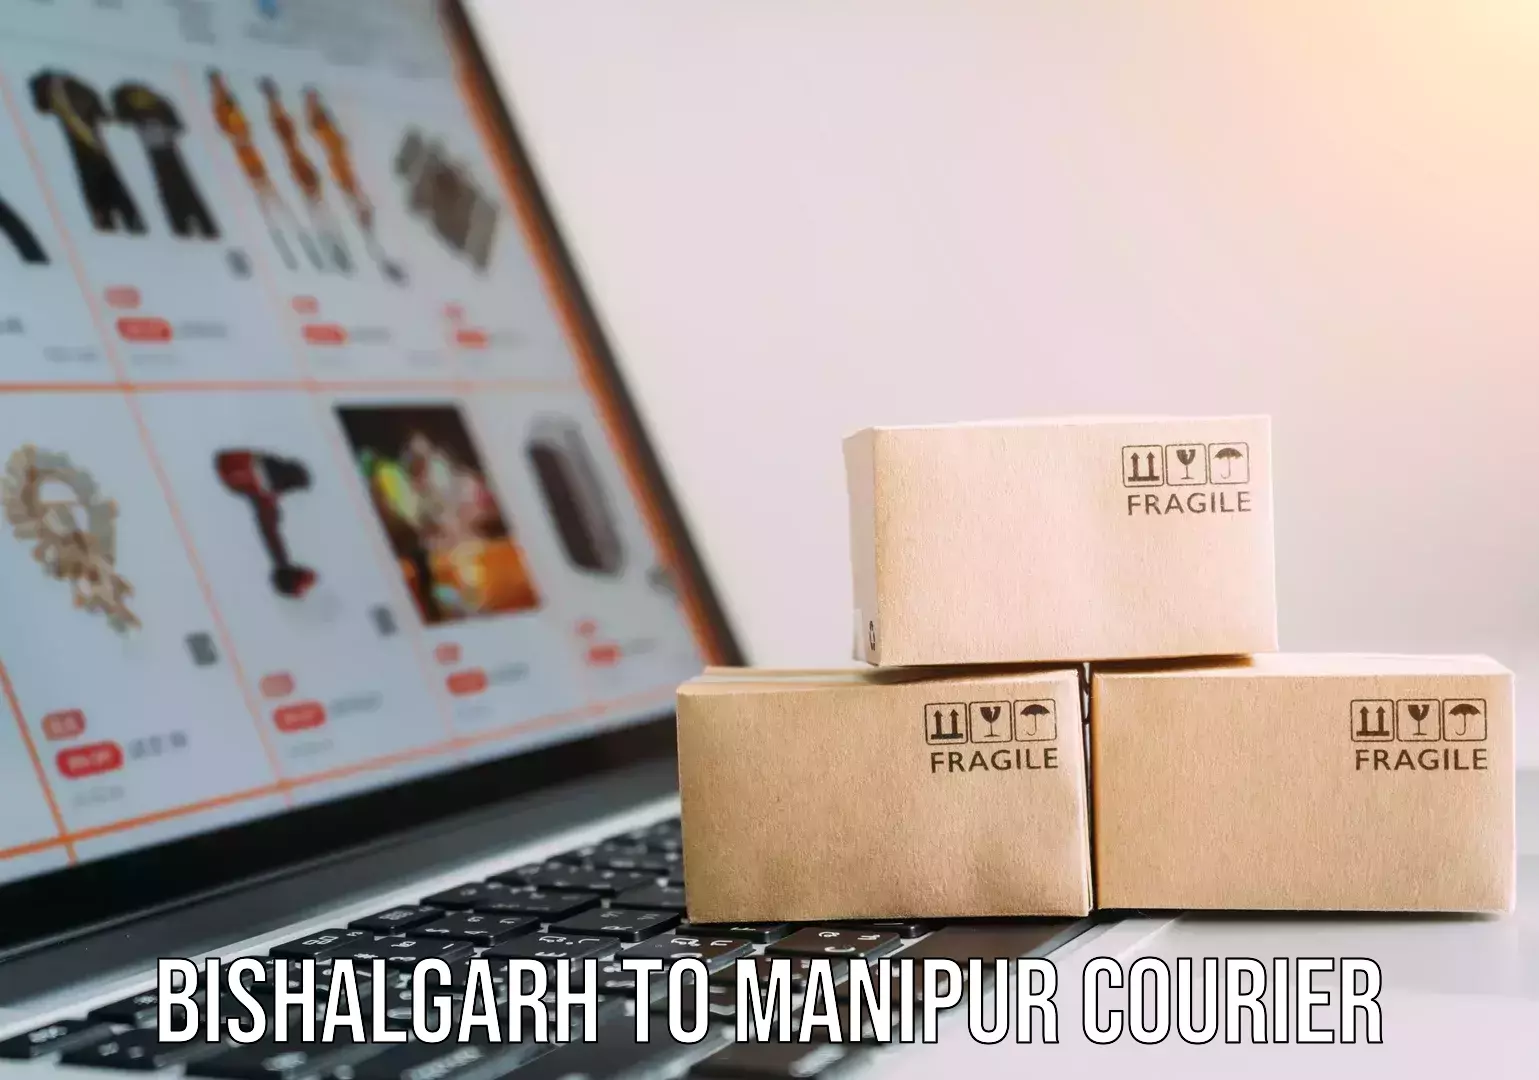 Courier app Bishalgarh to Manipur